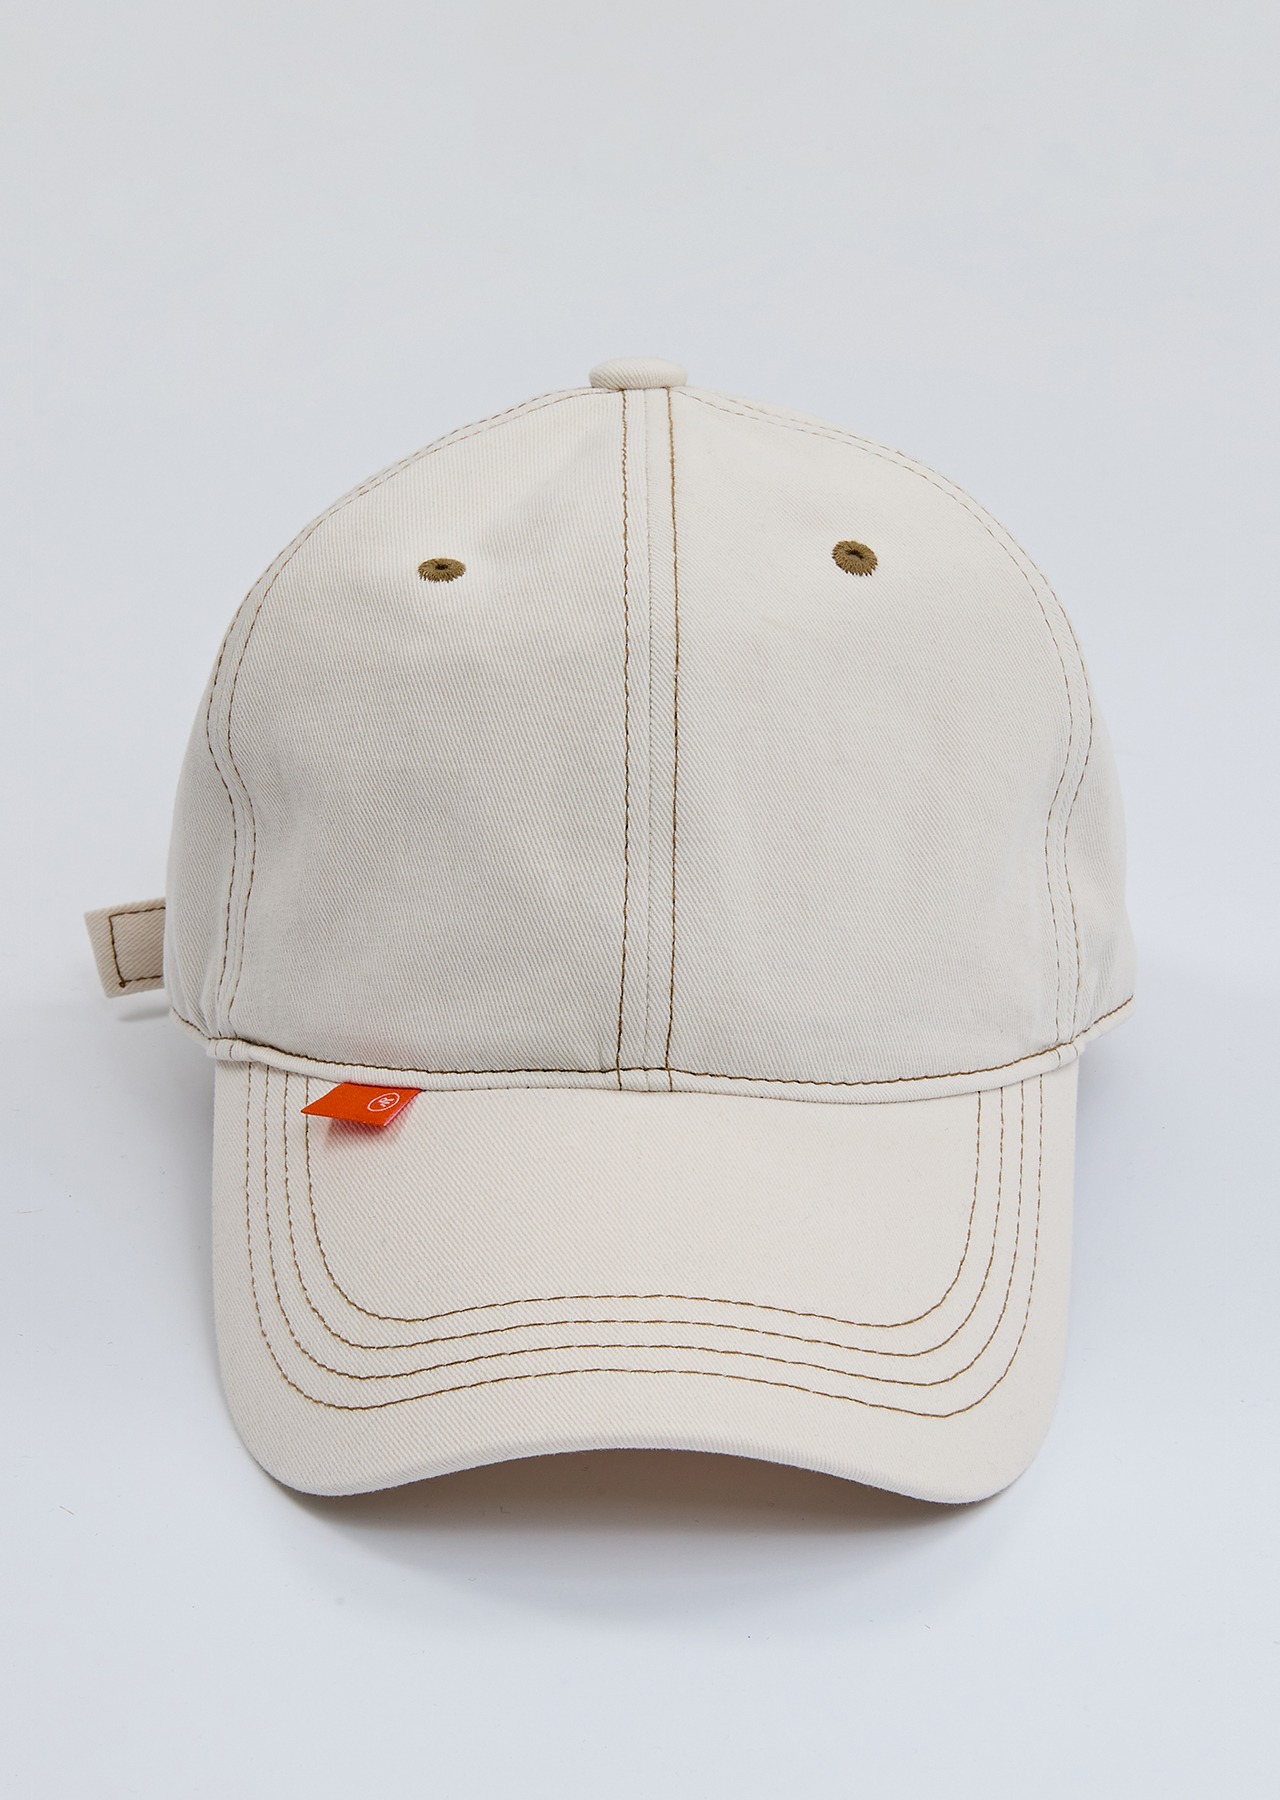 Stitch ball cap (BEIGE)